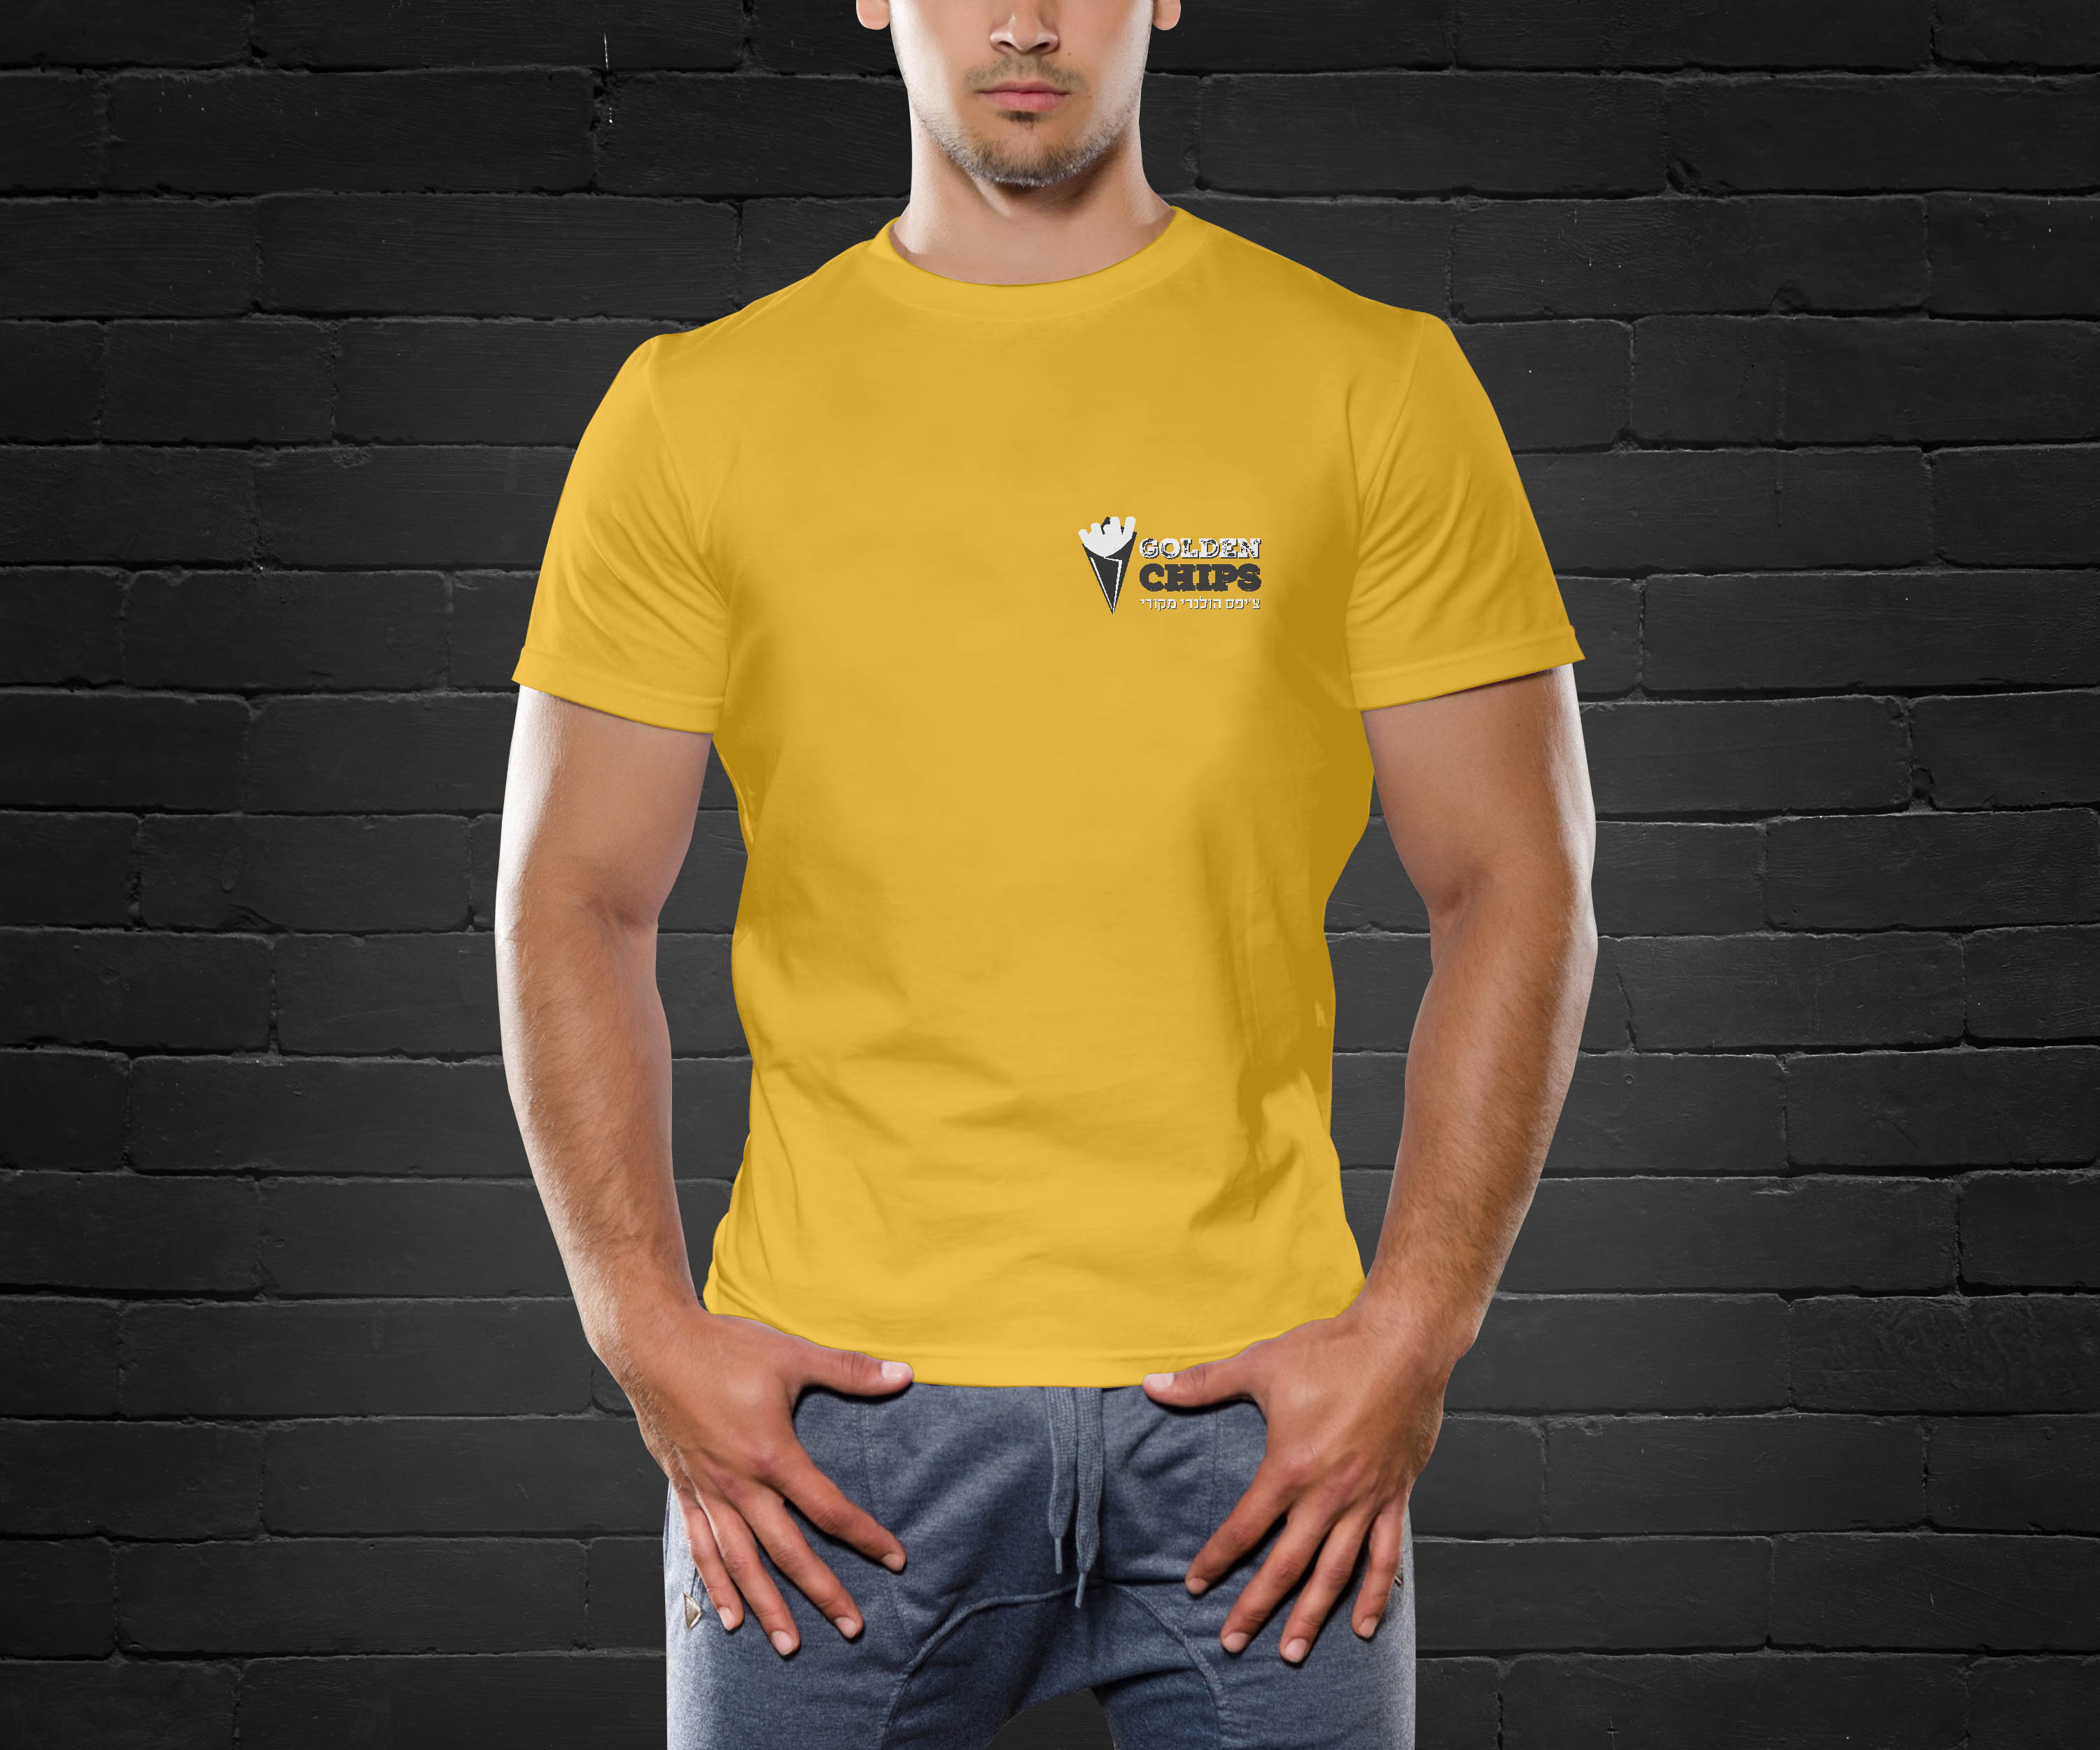 Men-T-Shirt-Mockup-PSD-100-DesignYep-com.jpg